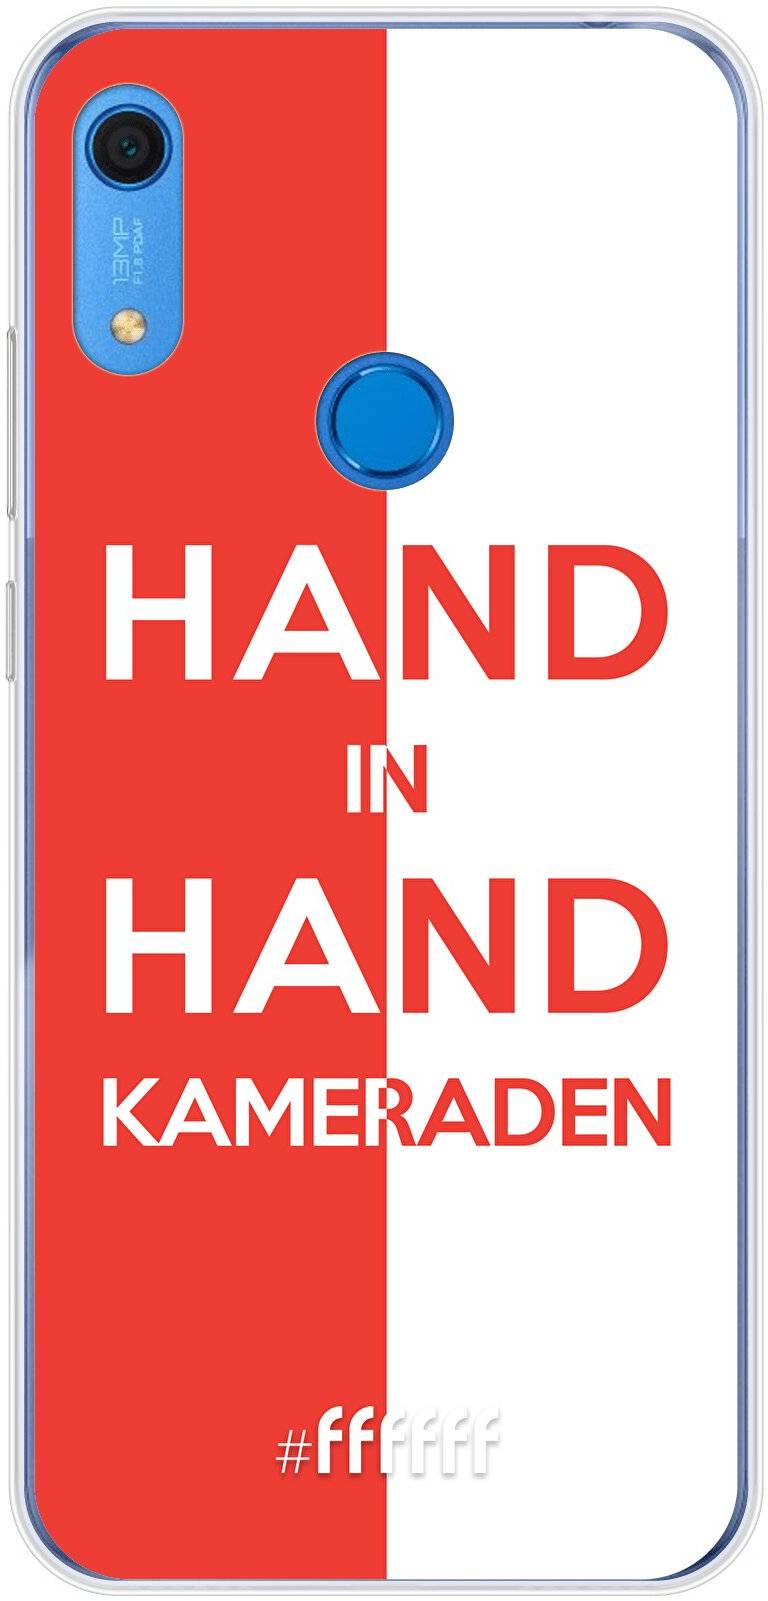 Feyenoord - Hand in hand, kameraden Y6 (2019)